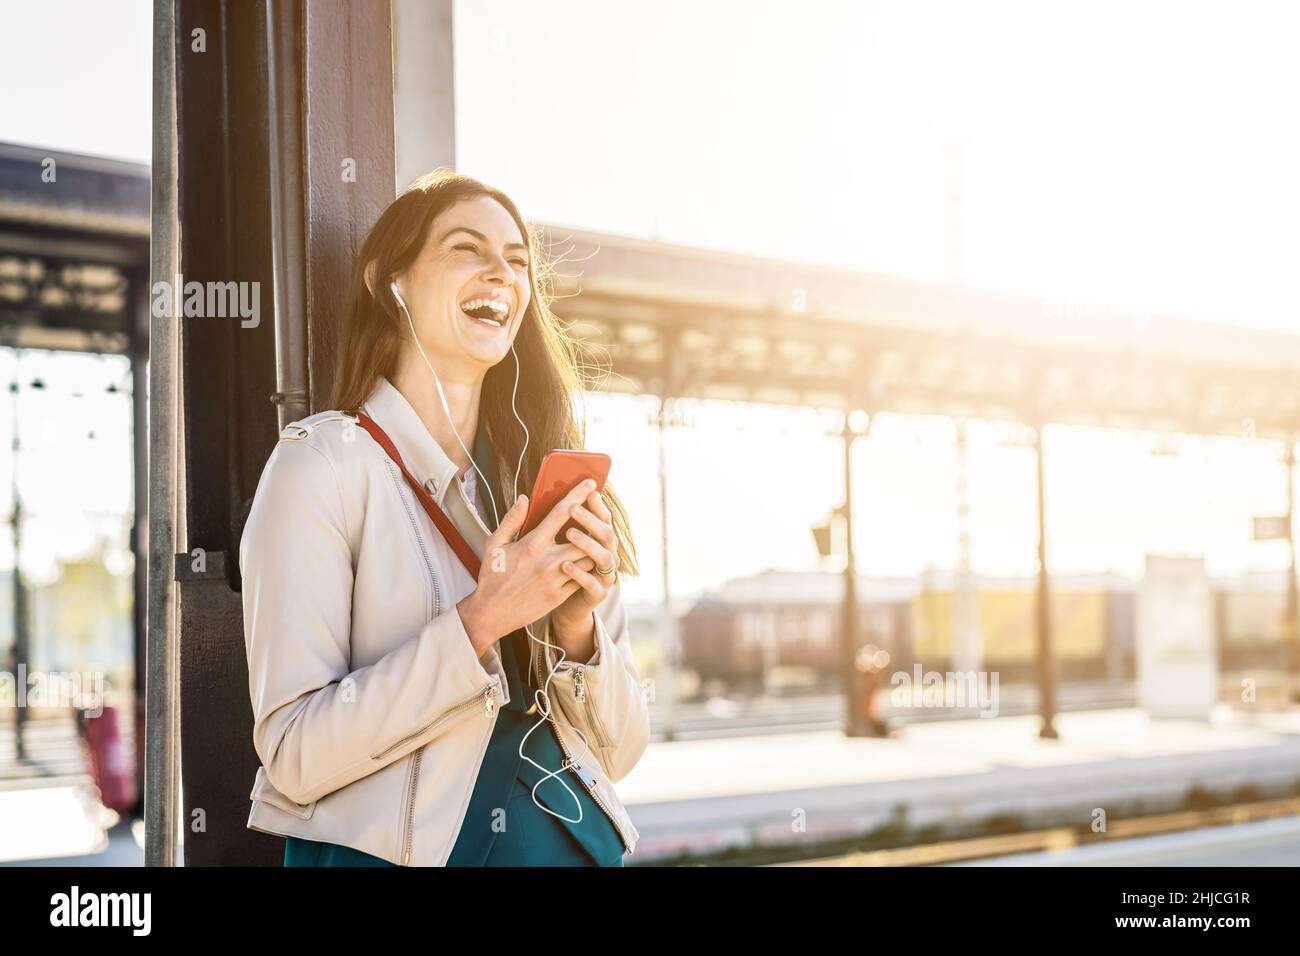 Frau in eleganten Kleidern wartet auf dem Bahnhofssteig mit Smartphone, um die Zeit zu verstreichen. Reise- und Geschäftsfrau-Konzept Stockfoto